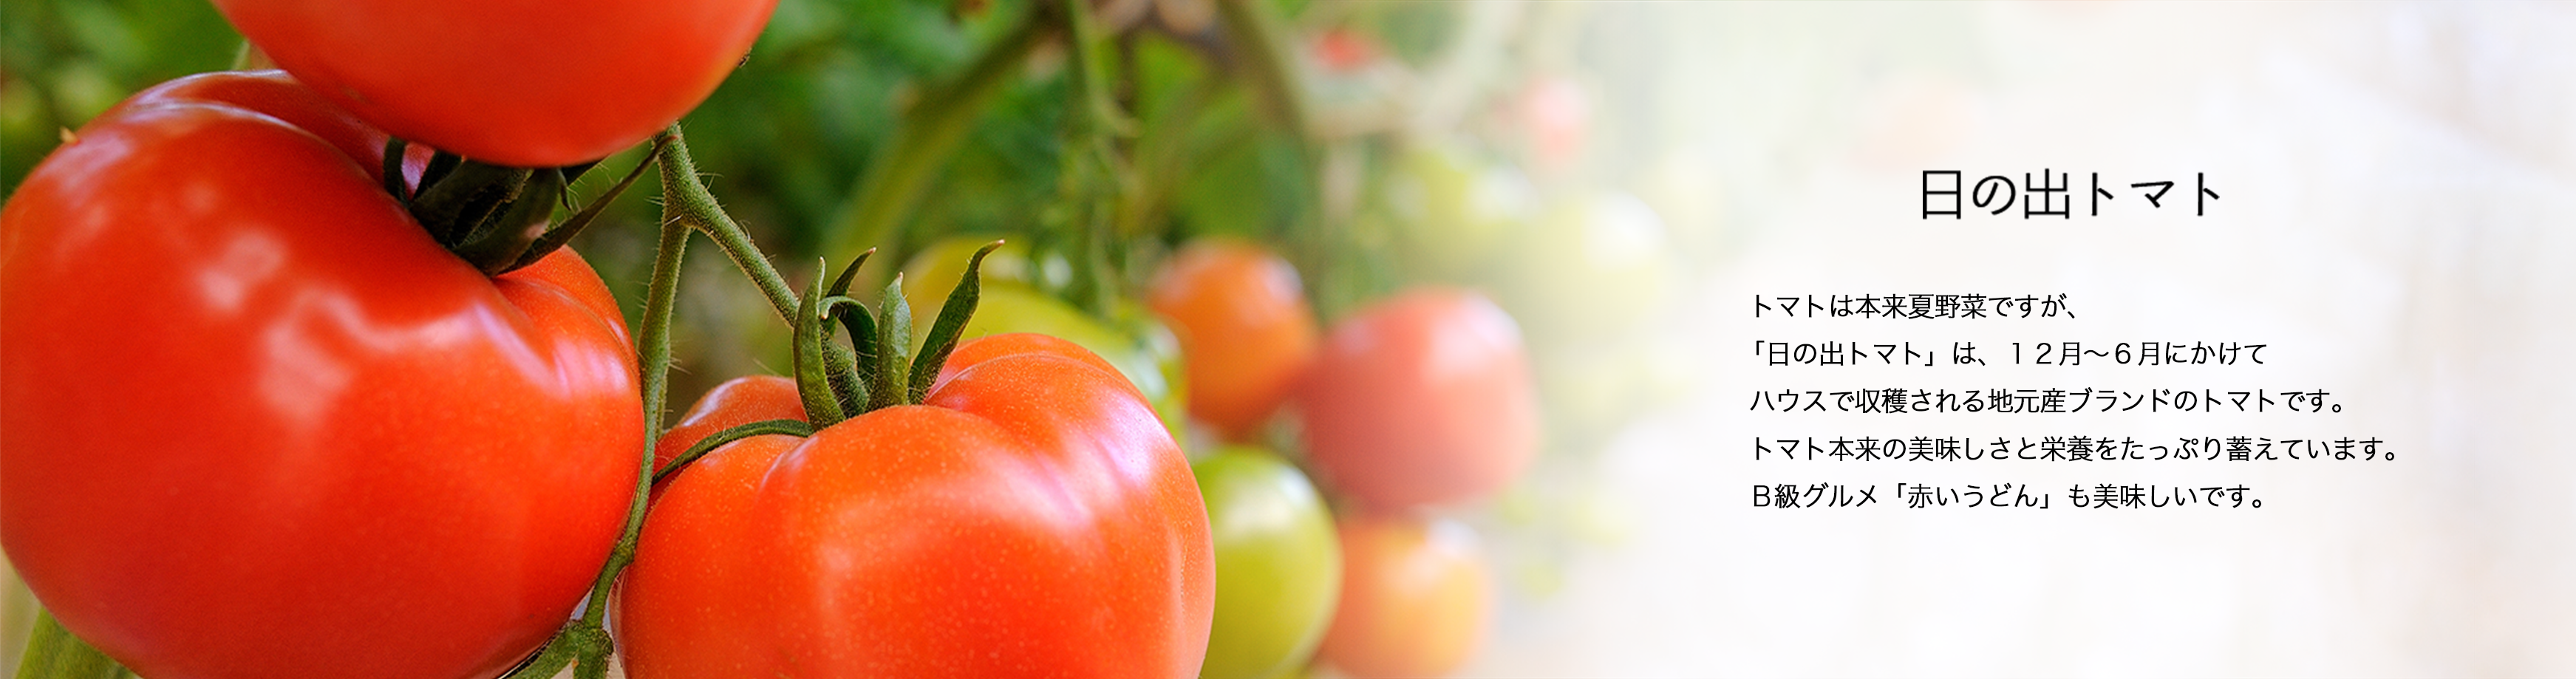 日の出トマト　トマトは本来夏野菜ですが、 「日の出トマト」は、１２月〜６月にかけて ハウスで収穫される地元産ブランドのトマトです。 トマト本来の美味しさと栄養をたっぷり蓄えています。 B級グルメ「赤いうどん」も美味しいです。